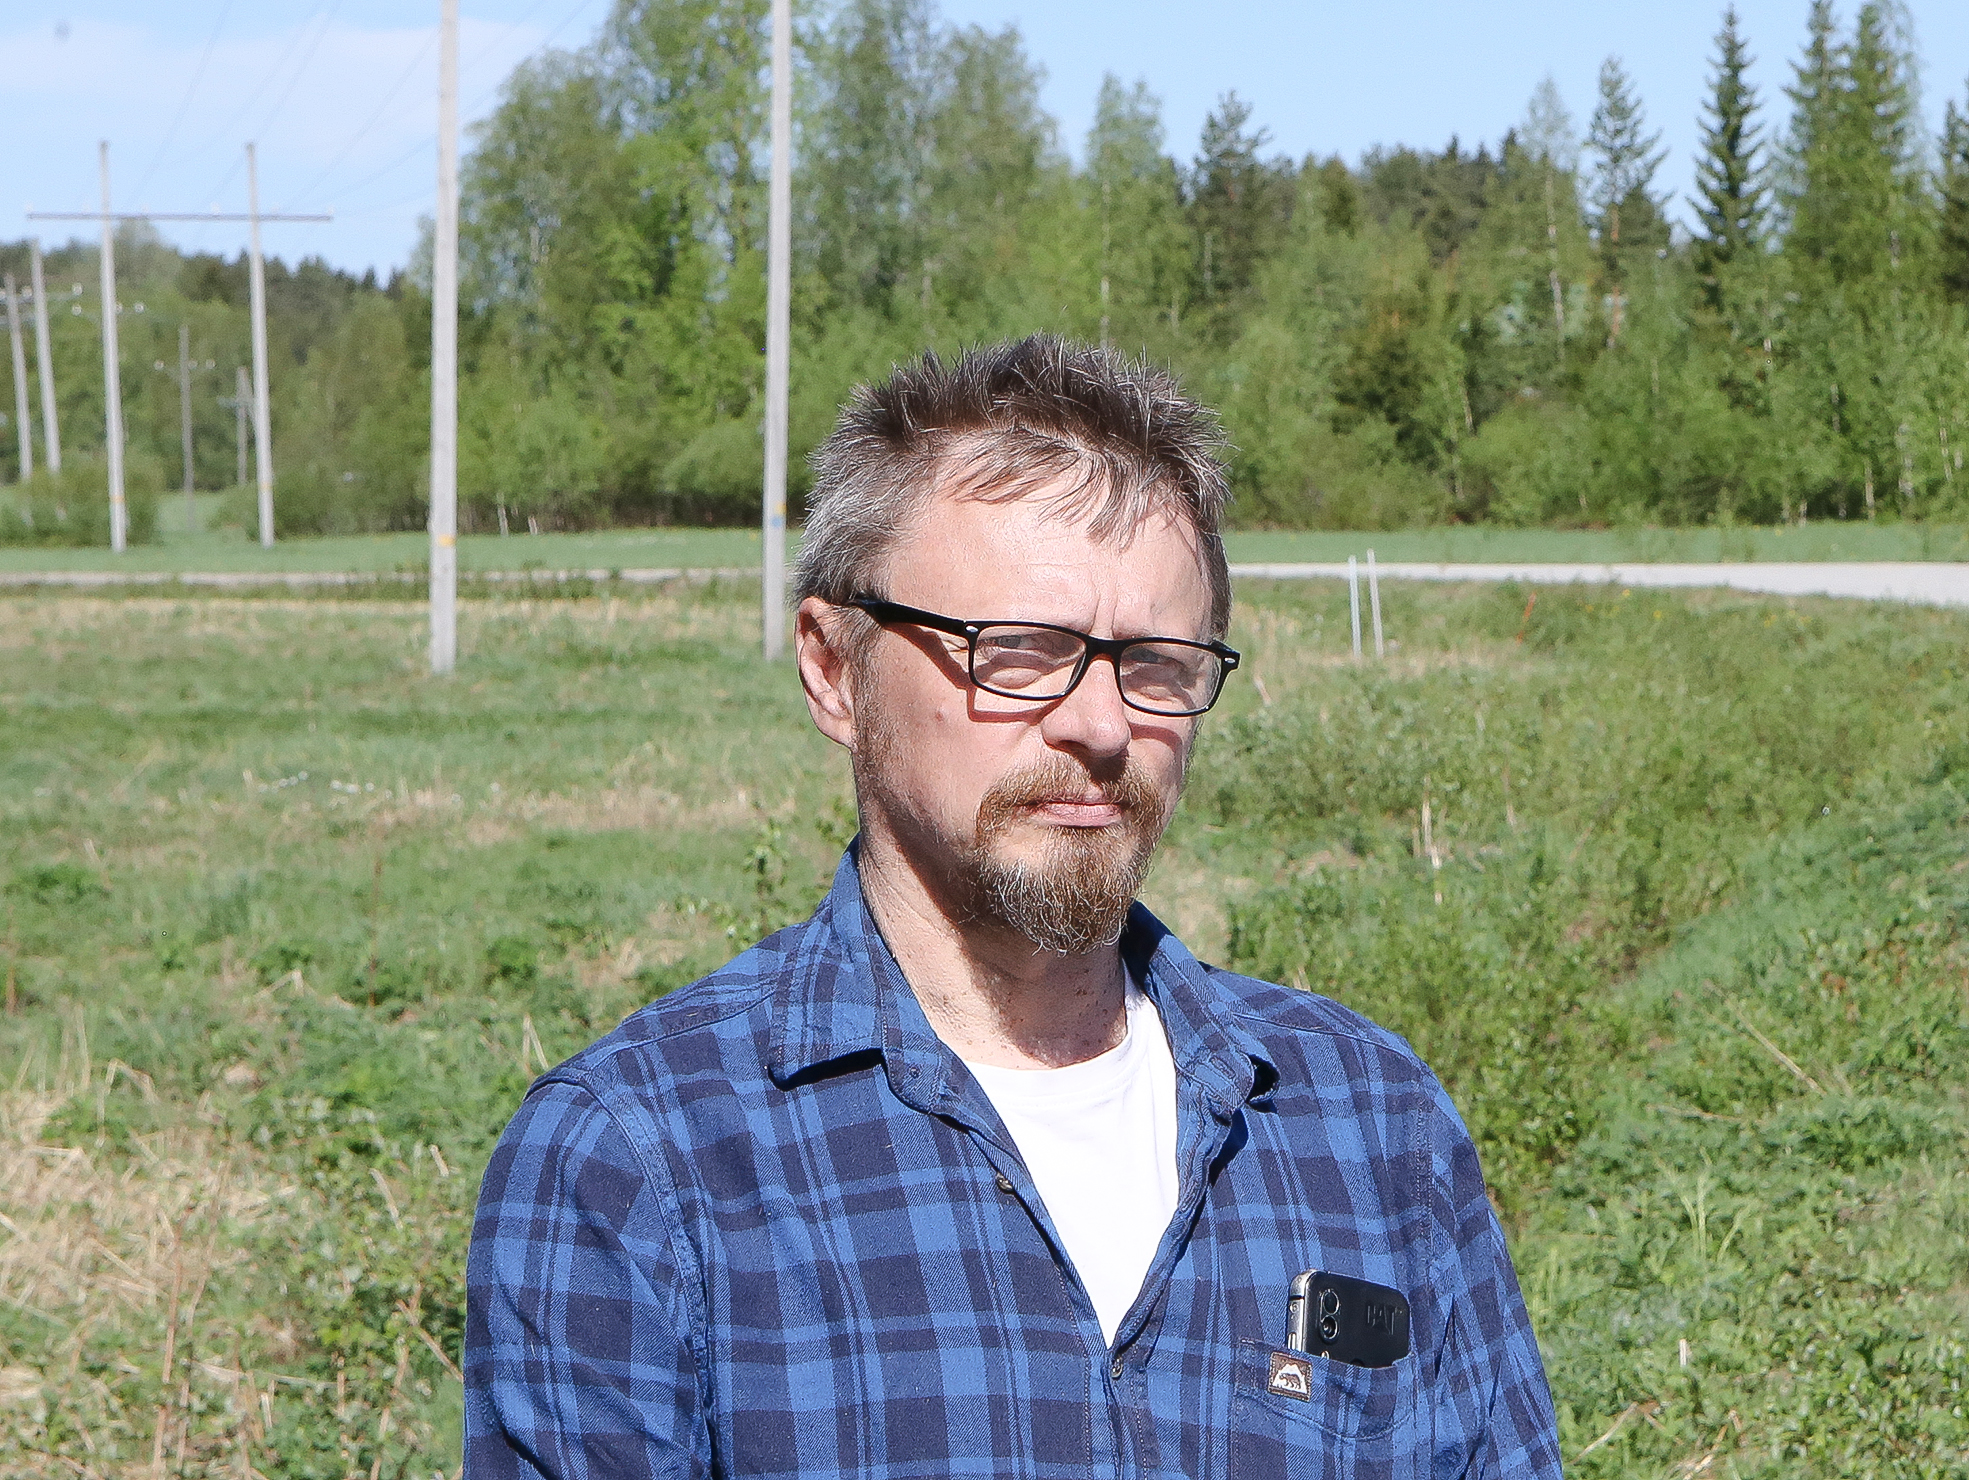 Valokuidun vedossa kaivaminen maksaa. Heikki Nykyrin mukaan Juuassakin kannattaisi pohtia yhteistyötä esimerkiksi sähköyhtiön kanssa.